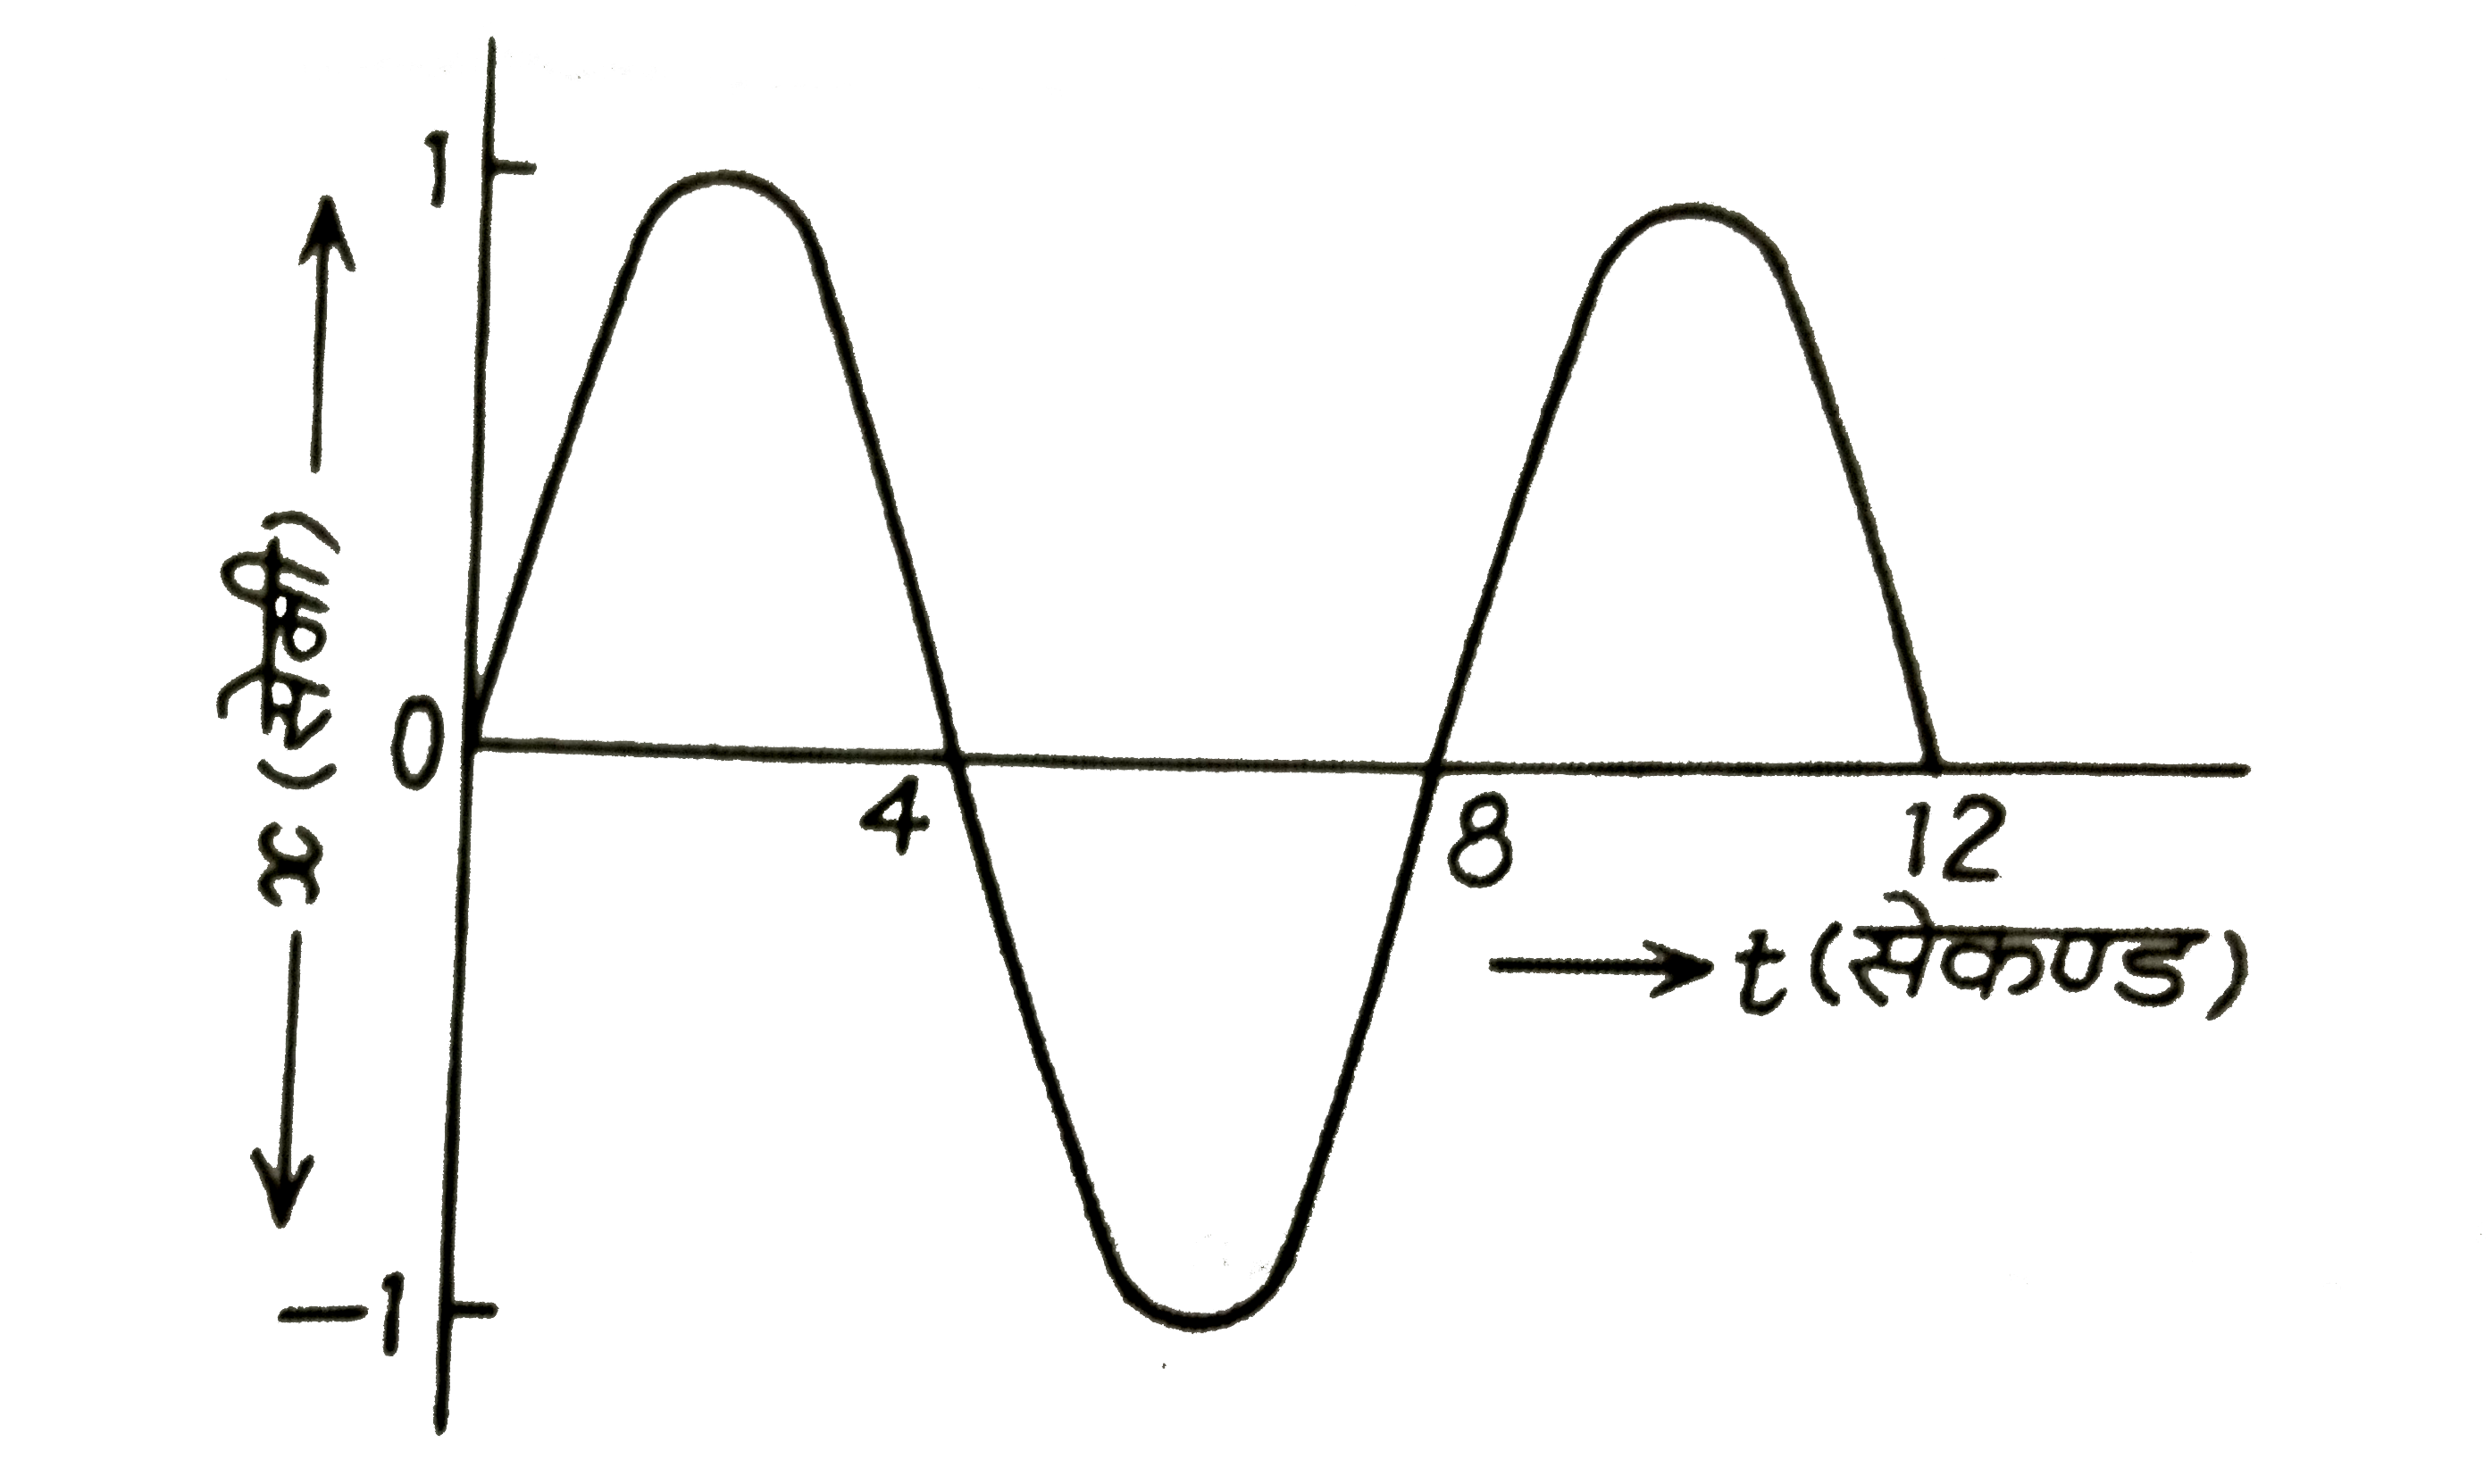 सरल आवर्त गति करते हुए किसी कण का x -t आरेख दर्शाया गया है समय t=4/3  सेकण्ड पर कण का त्वरण है ,